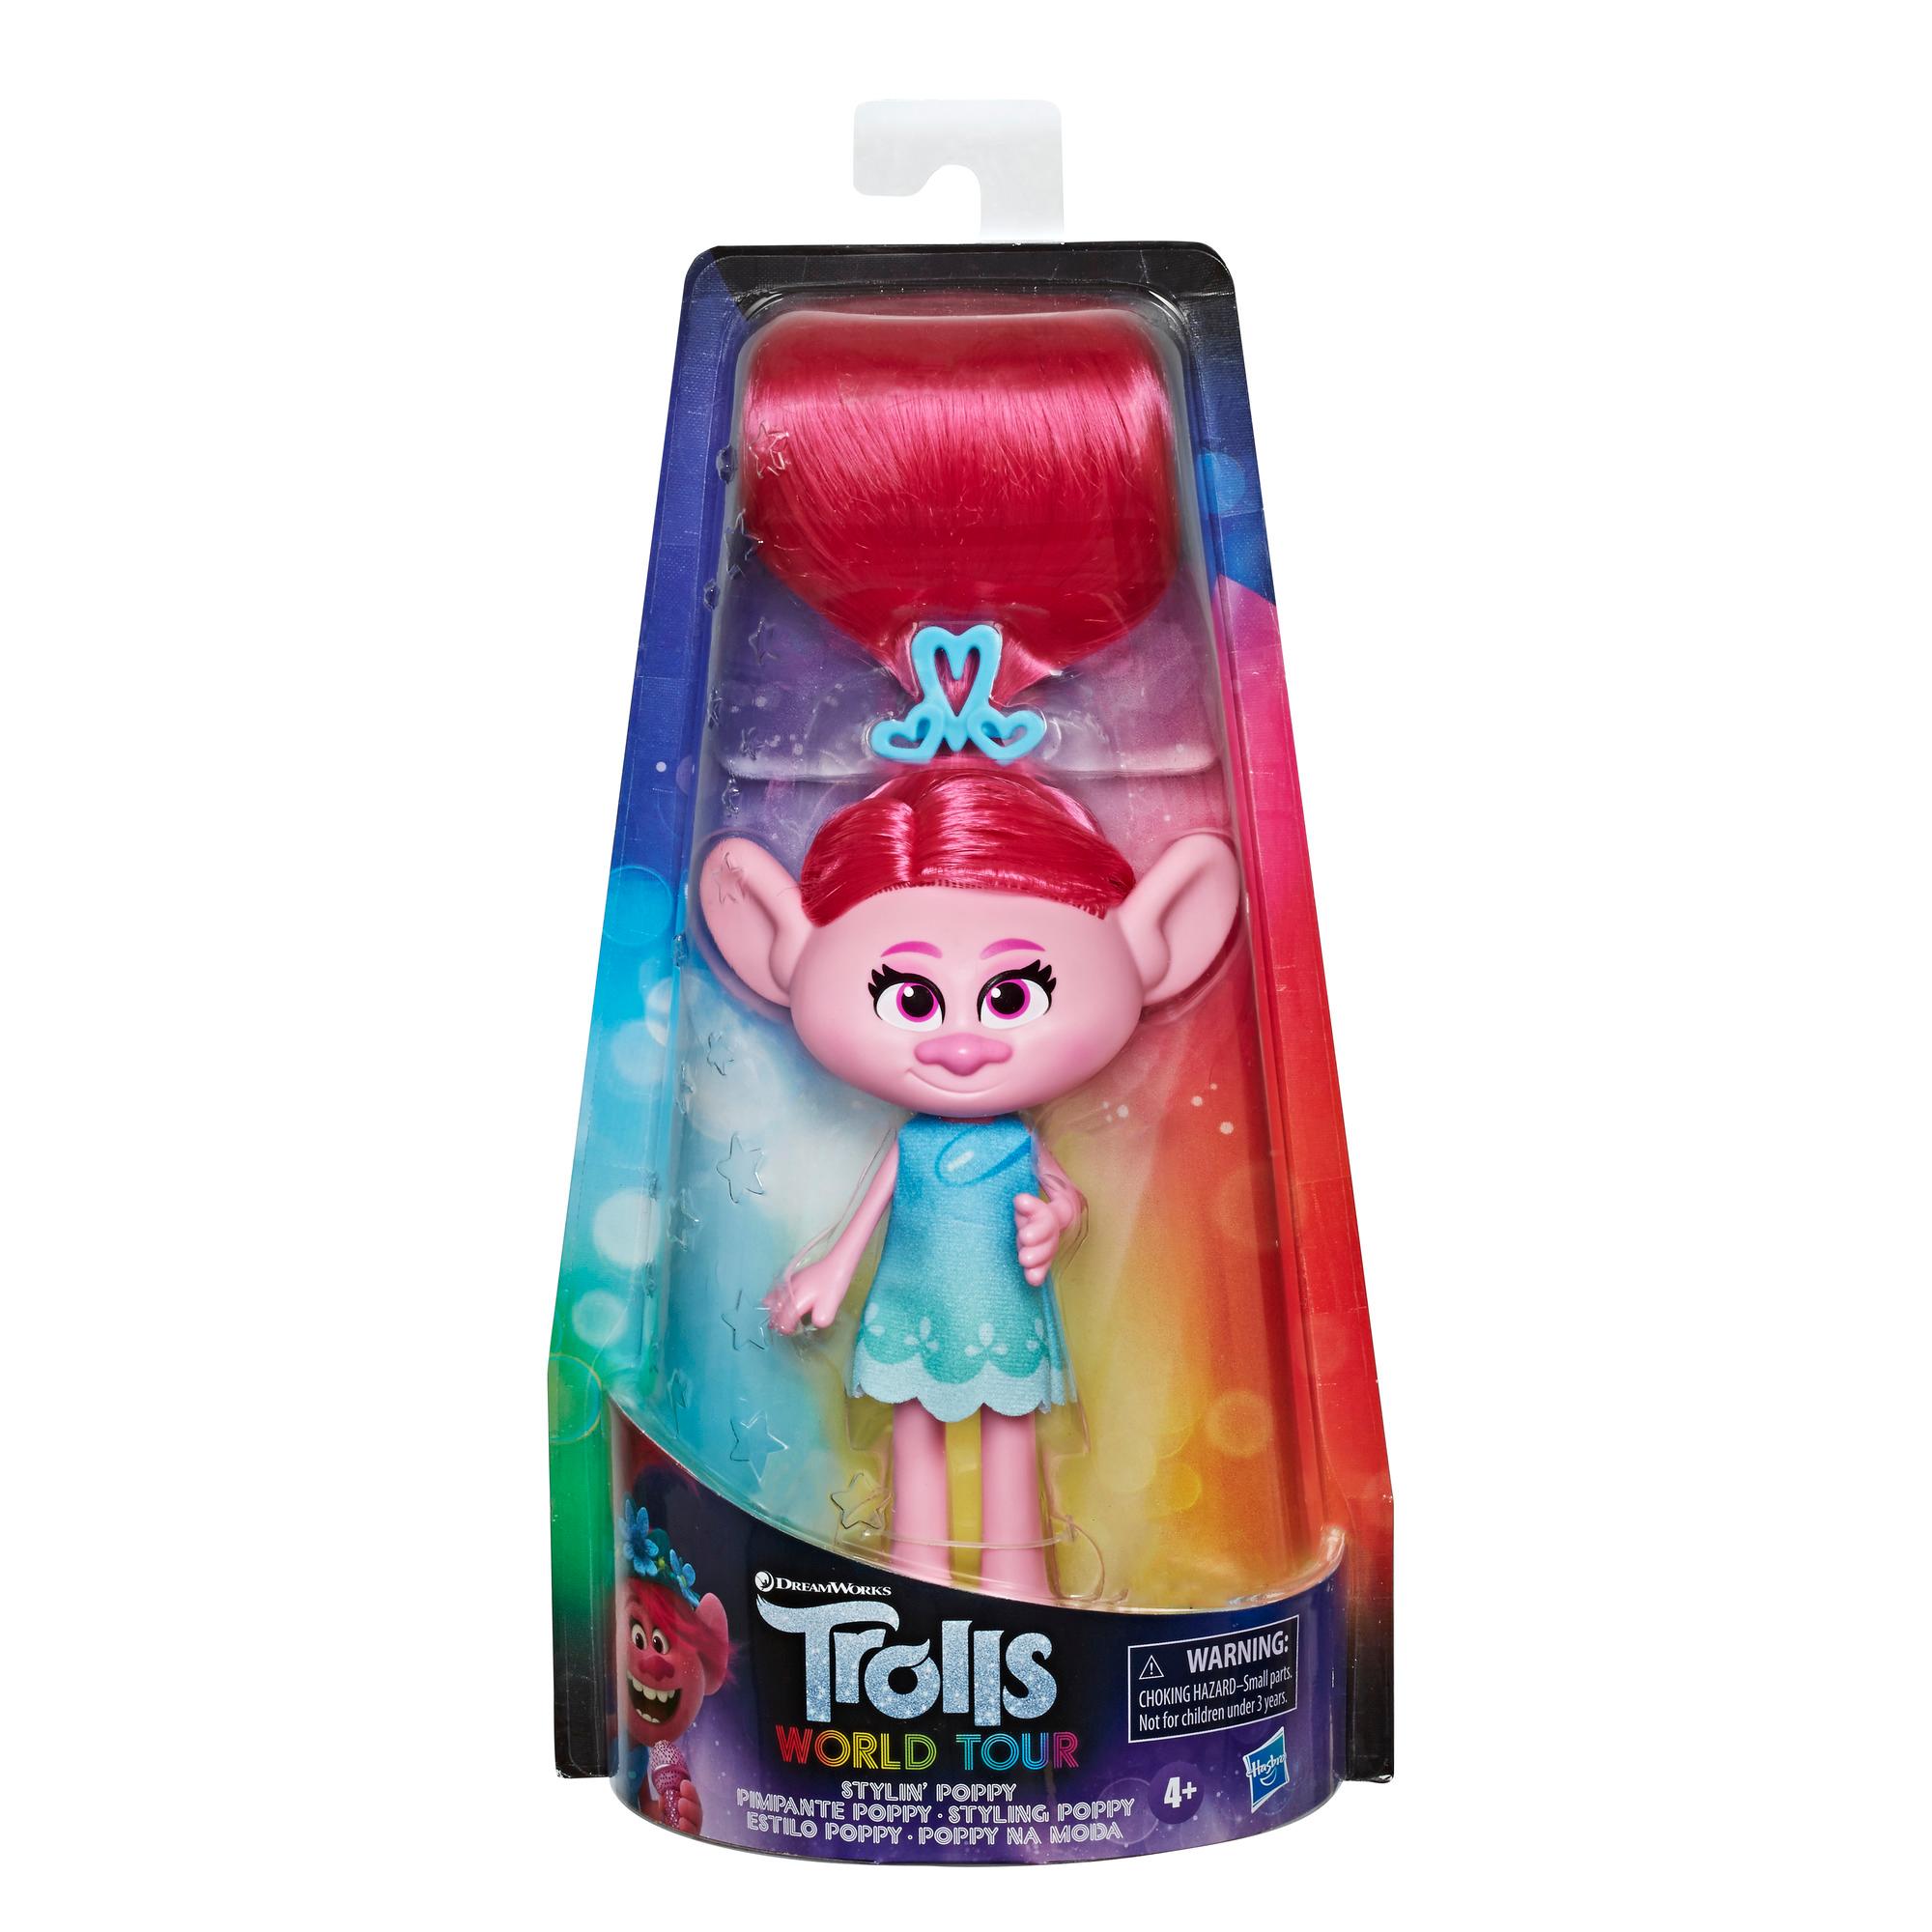 DreamWorks Trolls Poppy no Estilo com vestido removível e acessório de cabelo, com inspiração no filme Trolls World Tour